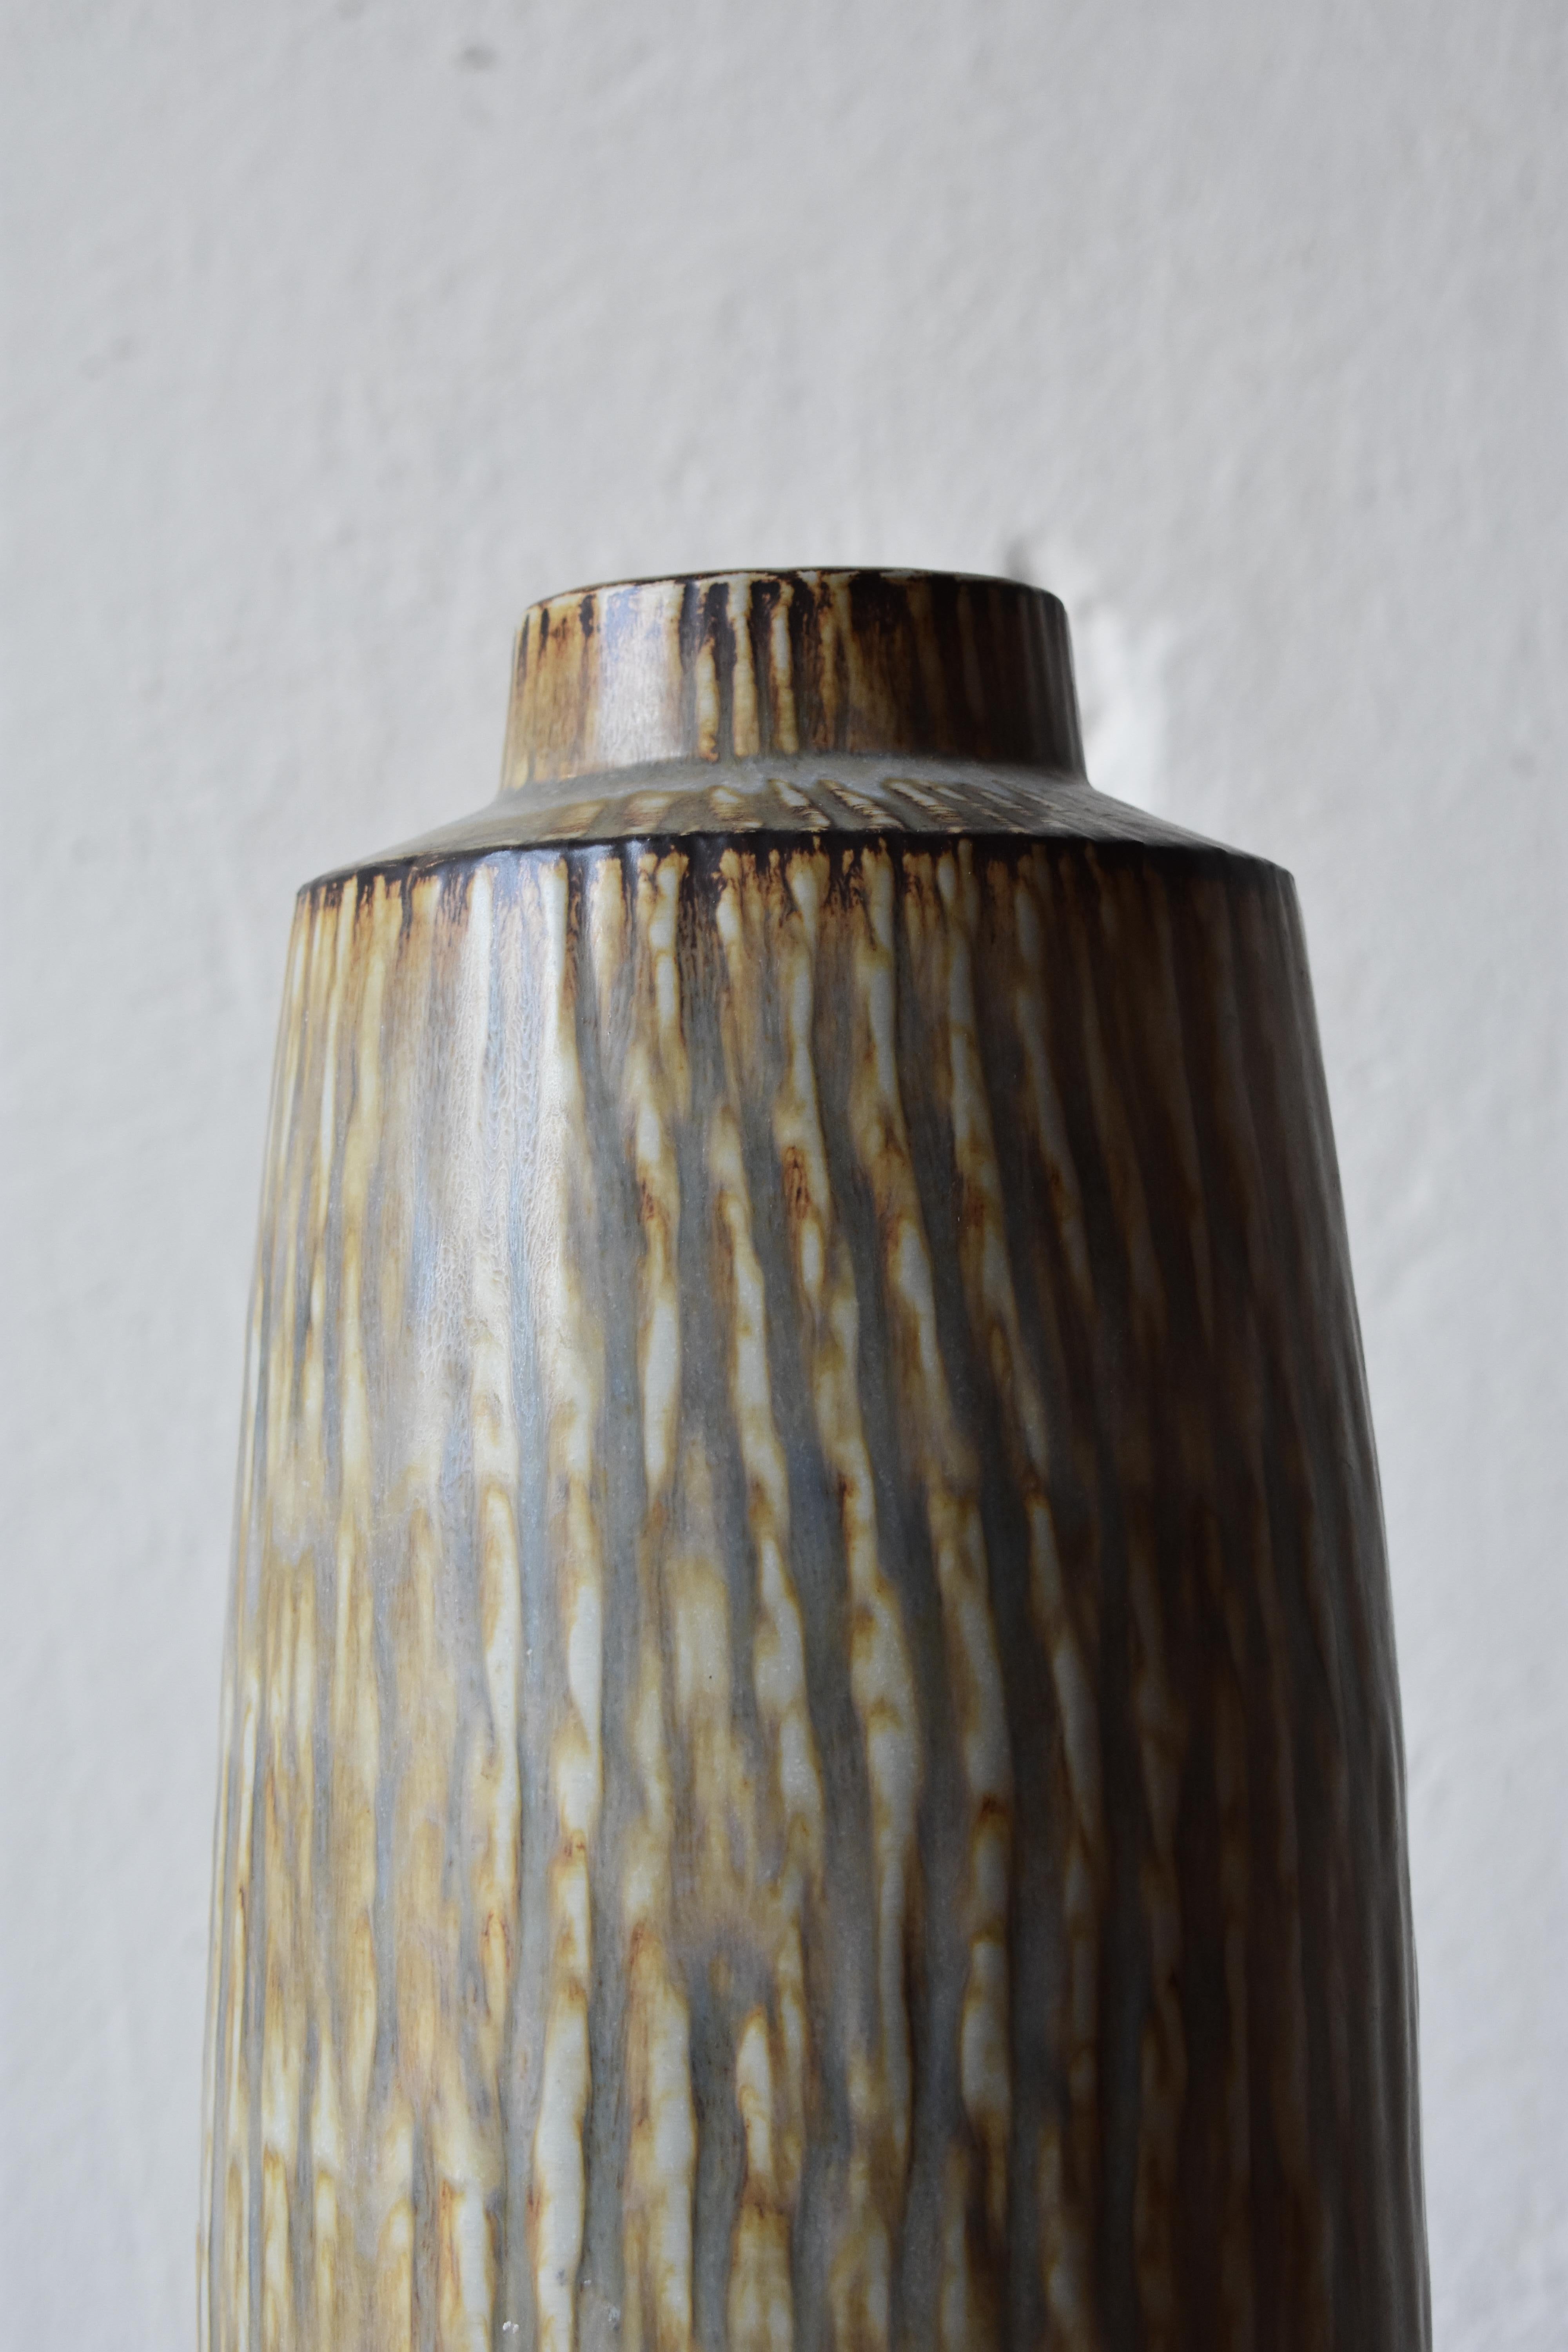 Rorstrand vase by Gunnar Nylund.